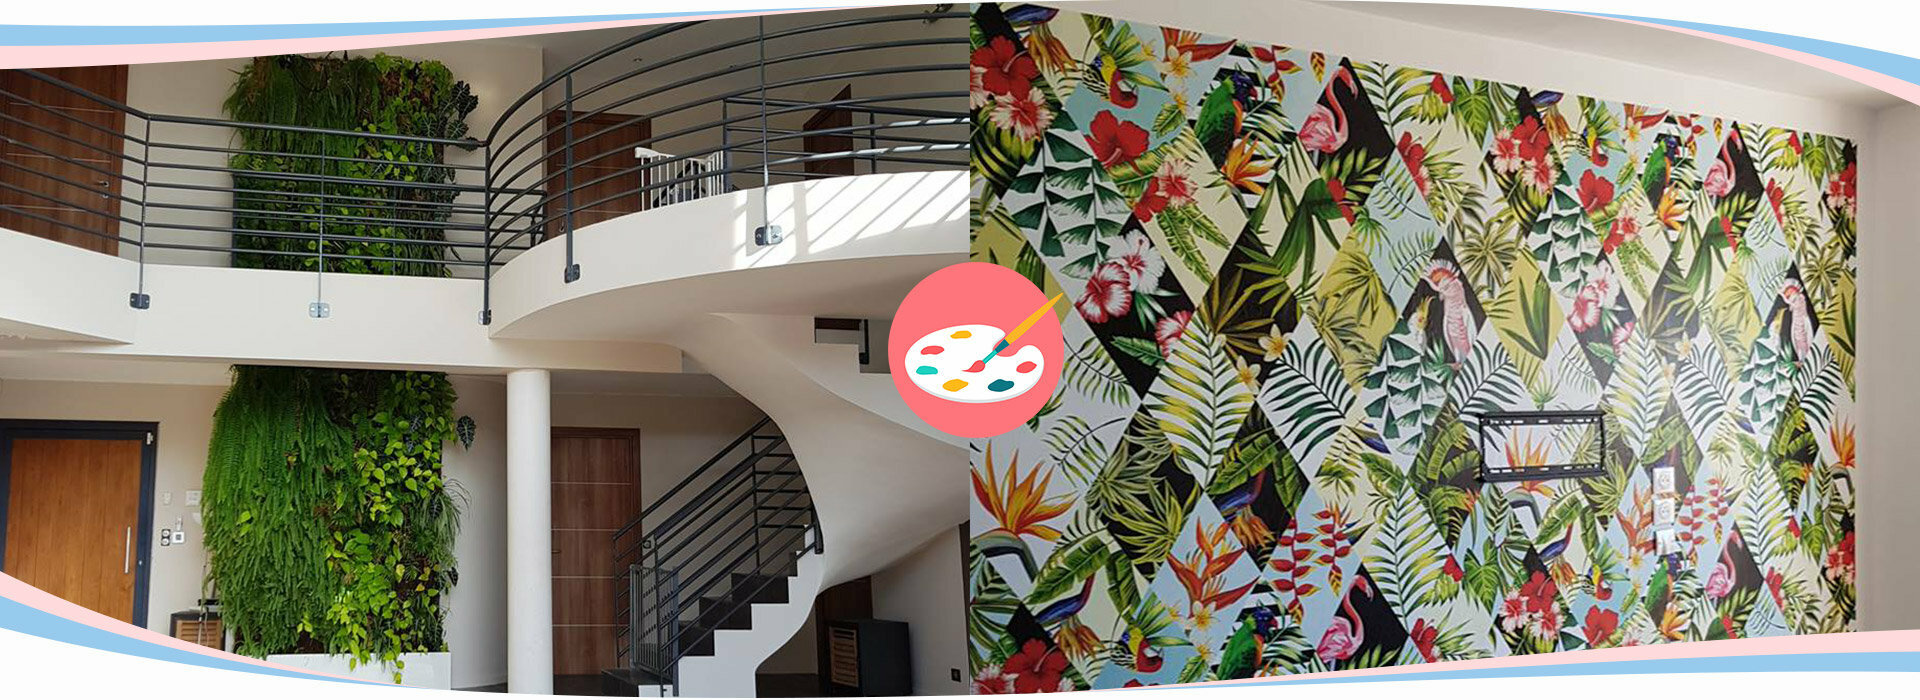 Peintres décoratrices en bâtiment au féminin | NUANCES DDS - Montpellier